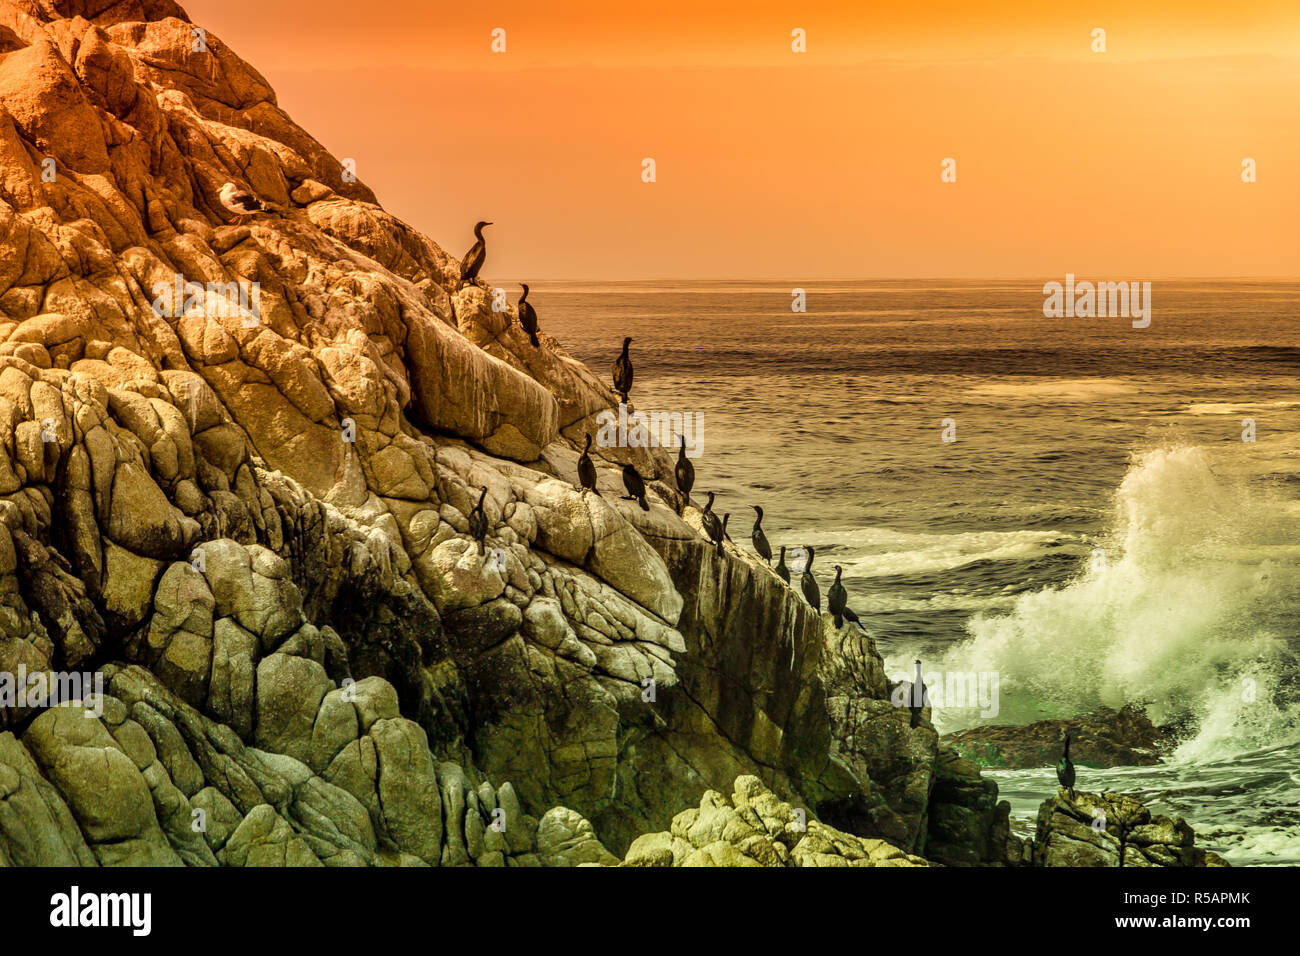 Acantilado sobre el Océano Pacífico, con una línea de aves y una ola rompiendo cerca de Monterrey, California Foto de stock